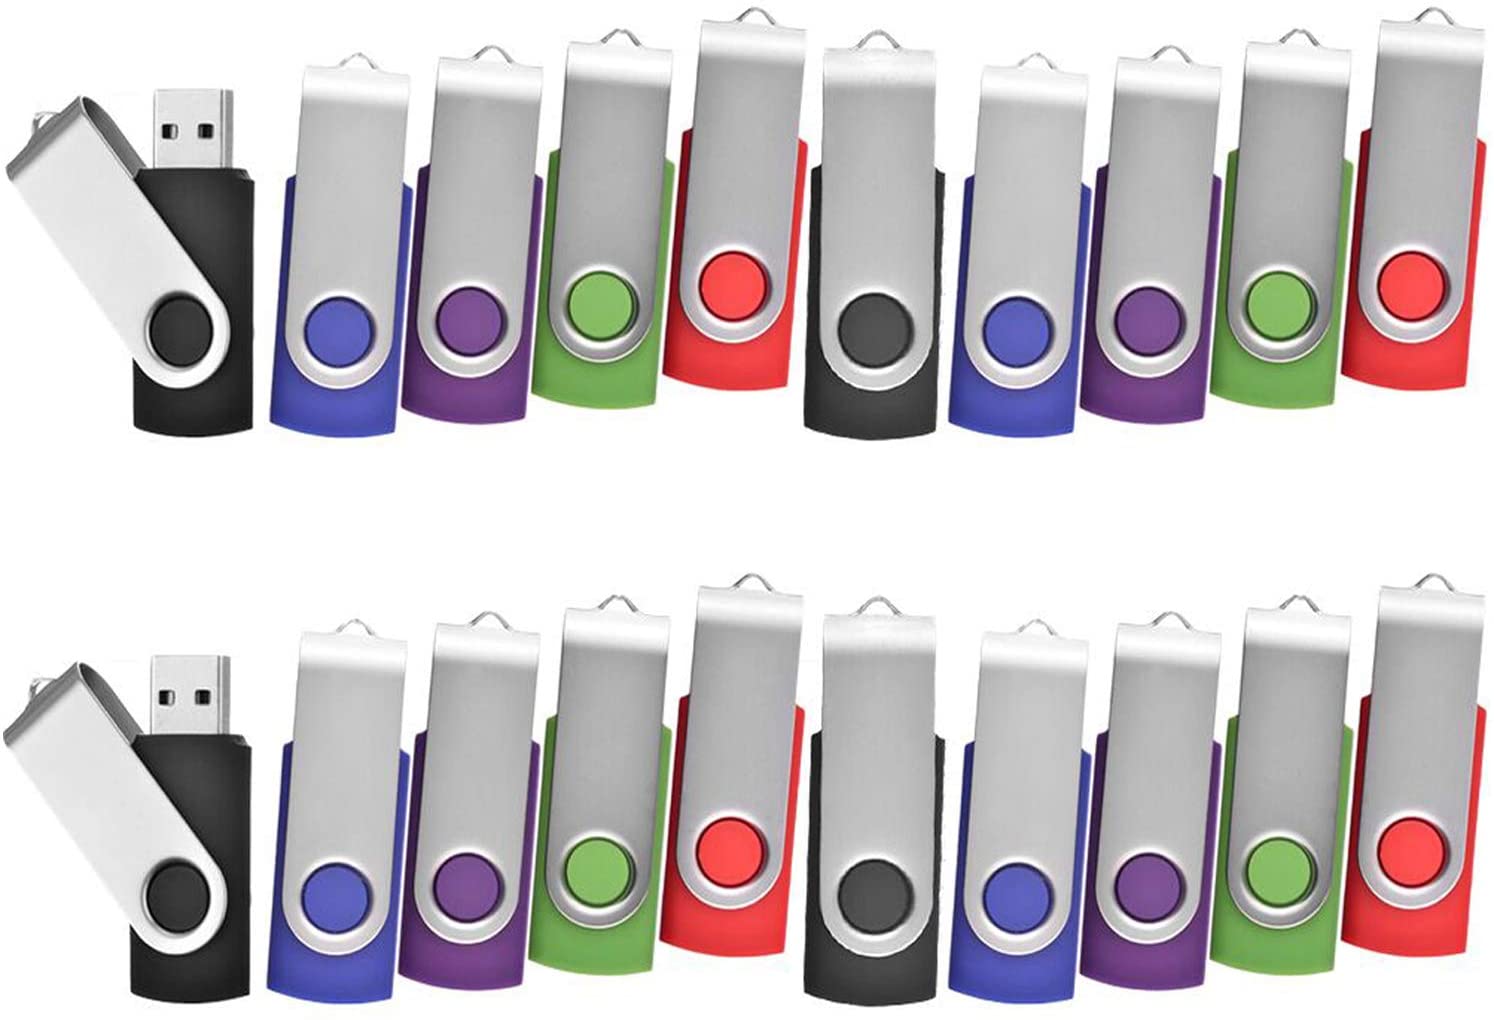 TEWENE Lot de 20 Clé USB 2 Go Pivotant Stockage Carte Mémoire Flash Drive Clés USB 2.0 Stockage et Transfert de Données Numériques(Vert/Rouge/Noir/Bleu/Violet) (2GB*20PCS)